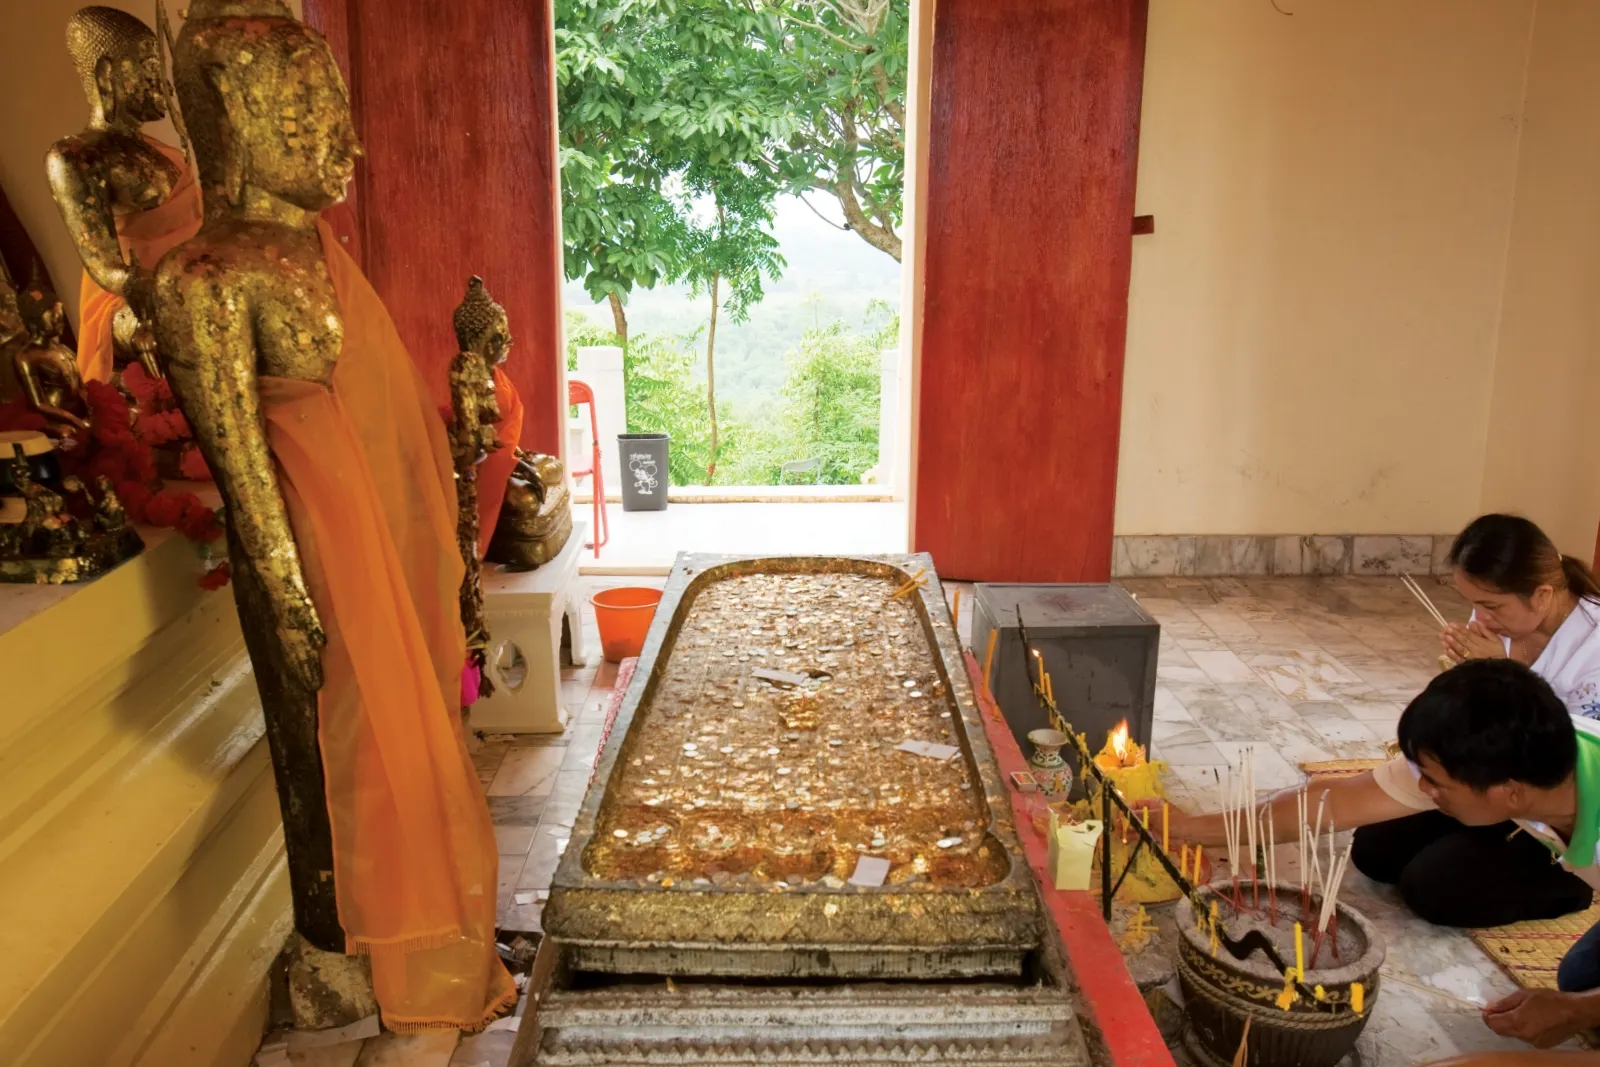 ตำบลสาริกา : รอยพระพุทธบาทจำลองเขานางบวช (Source: การท่องเที่ยวแห่งประเทศไทย)